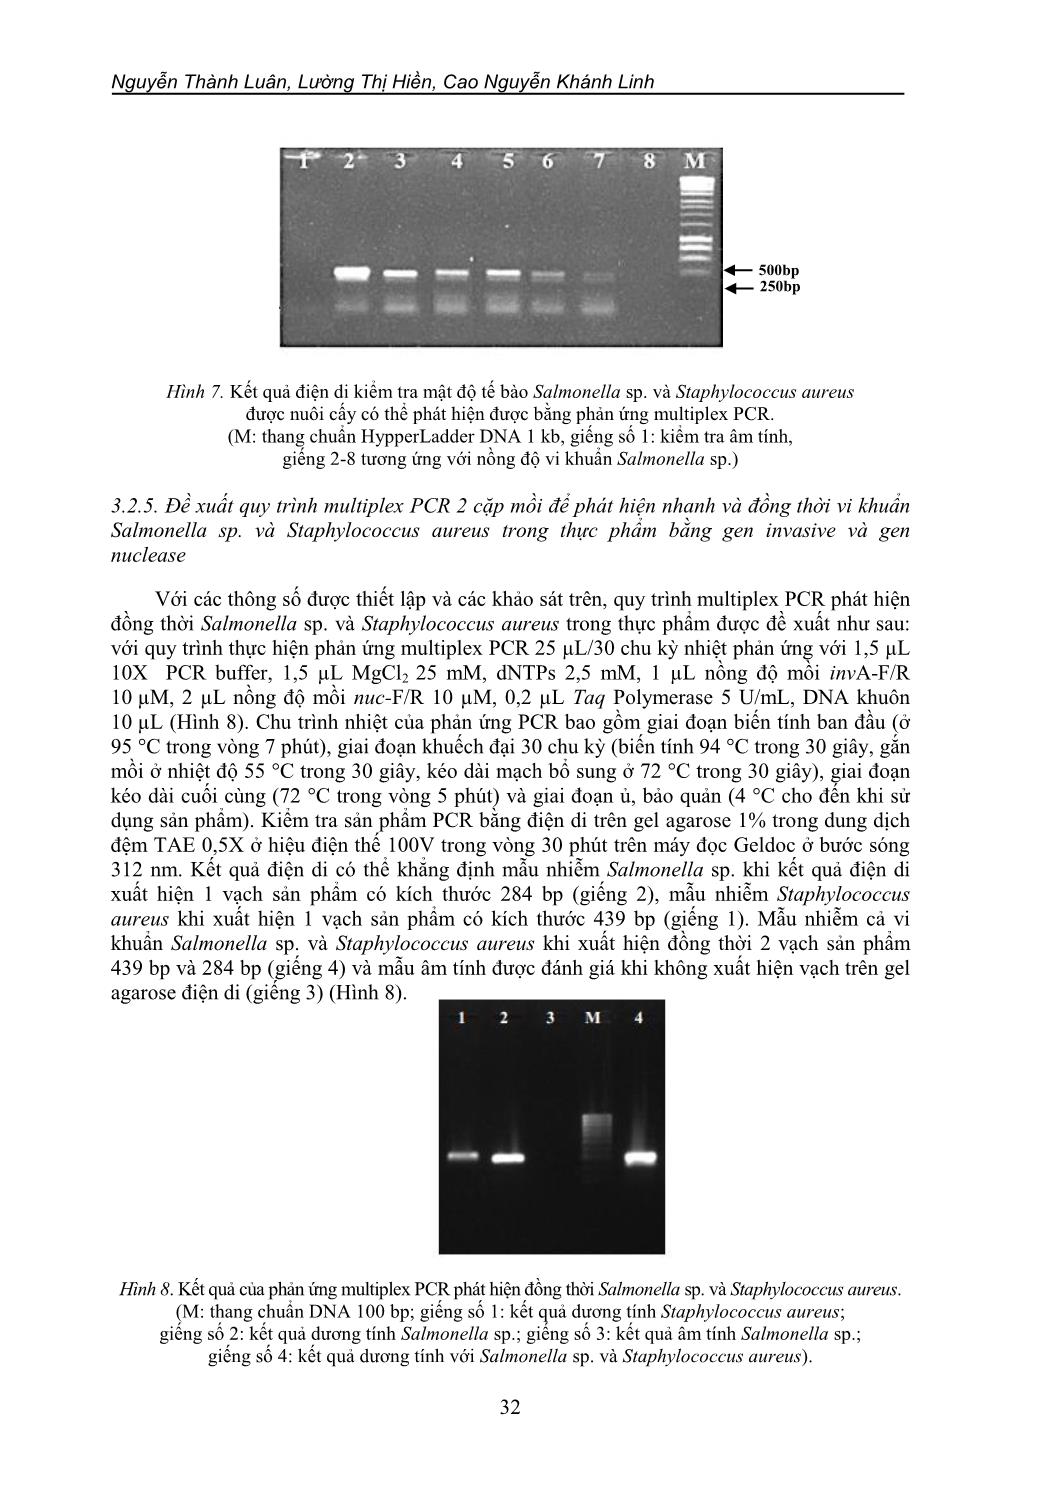 Nghiên cứu và ứng dụng kỹ thuật Multiplex PCR trong phát hiện vi khuẩn Salmonella sp. và Staphylococcus aureus gây ngộ độc thực phẩm trang 10